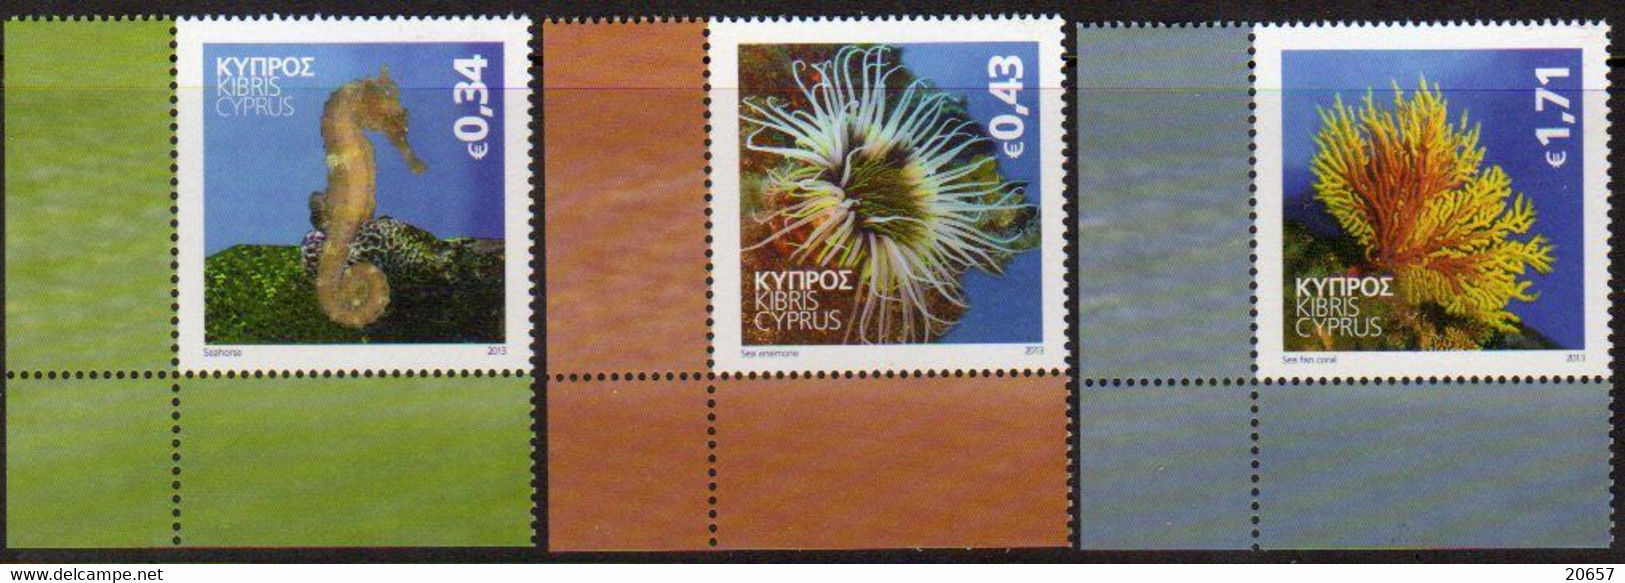 Chypre Cyprus 1266/68 Hippocampe, Anémone, Corail Gorgones - Vie Marine